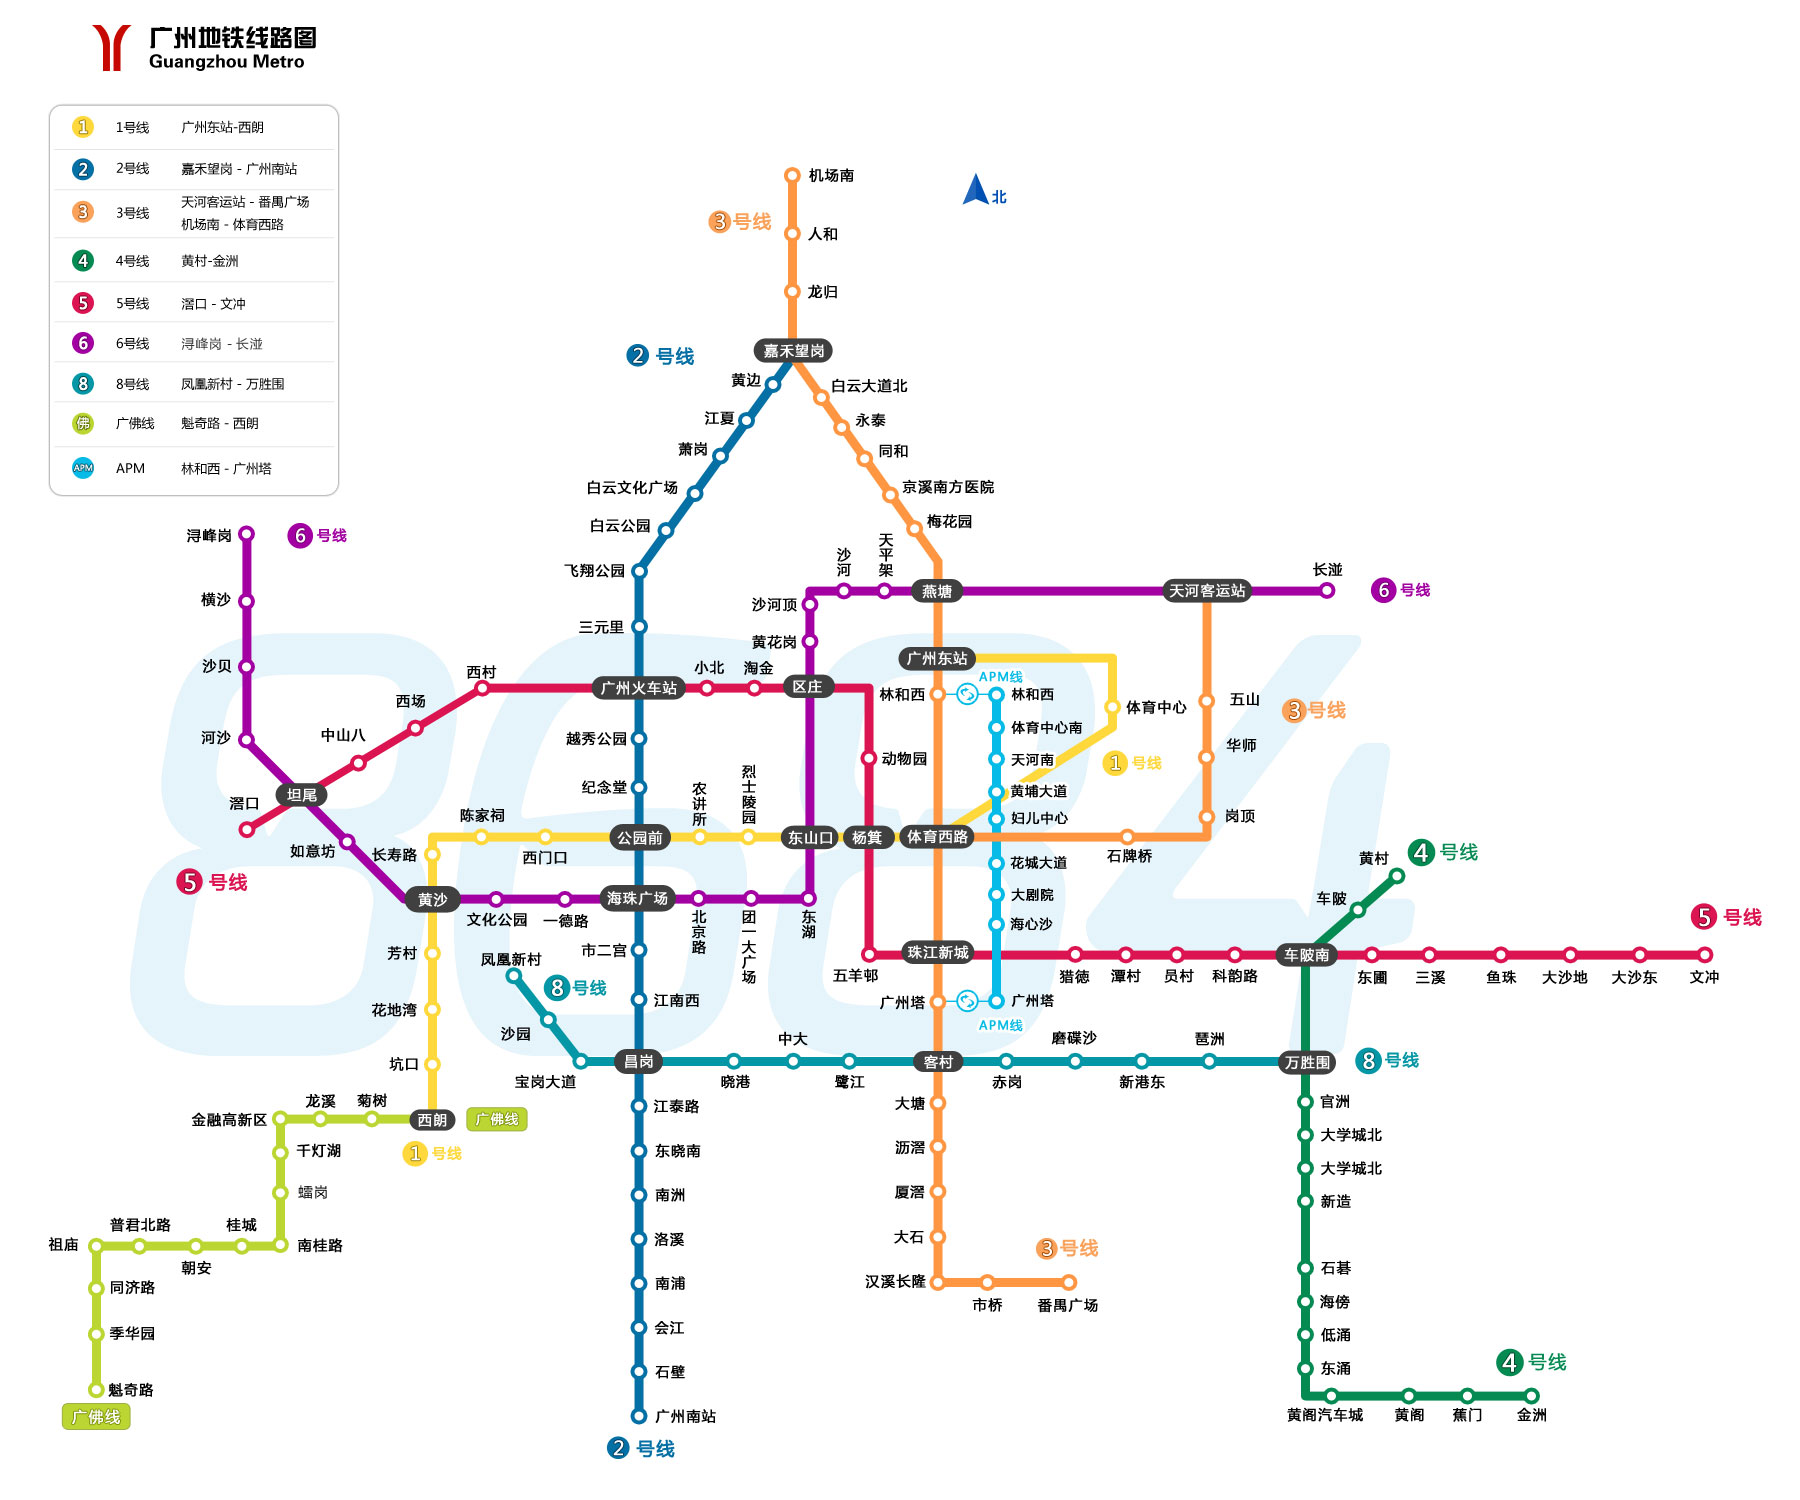 求这张深圳地铁2020年规划图高清版（广州城市地铁规划线图2020官方）